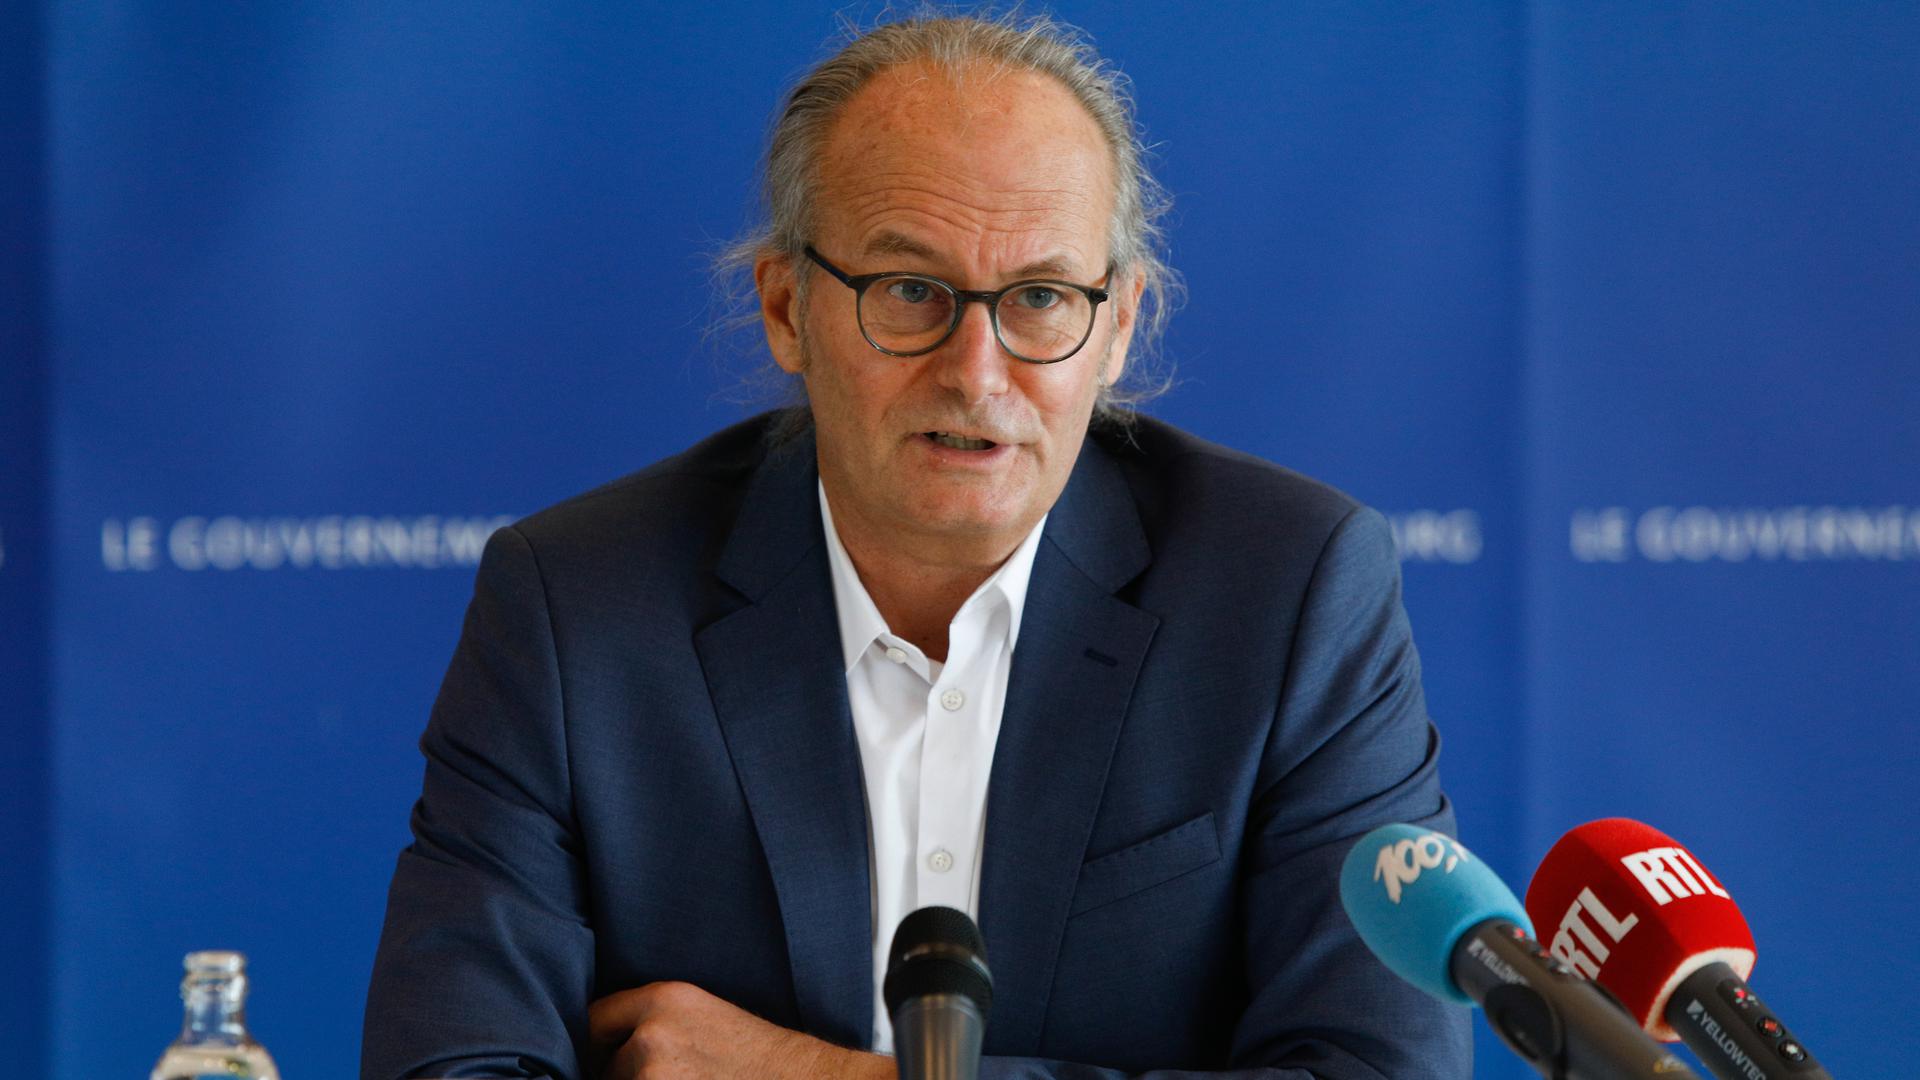 Selon les deux ministres luxembourgeois, «cette décision met en péril la sécurité de nos concitoyens luxembourgeois».